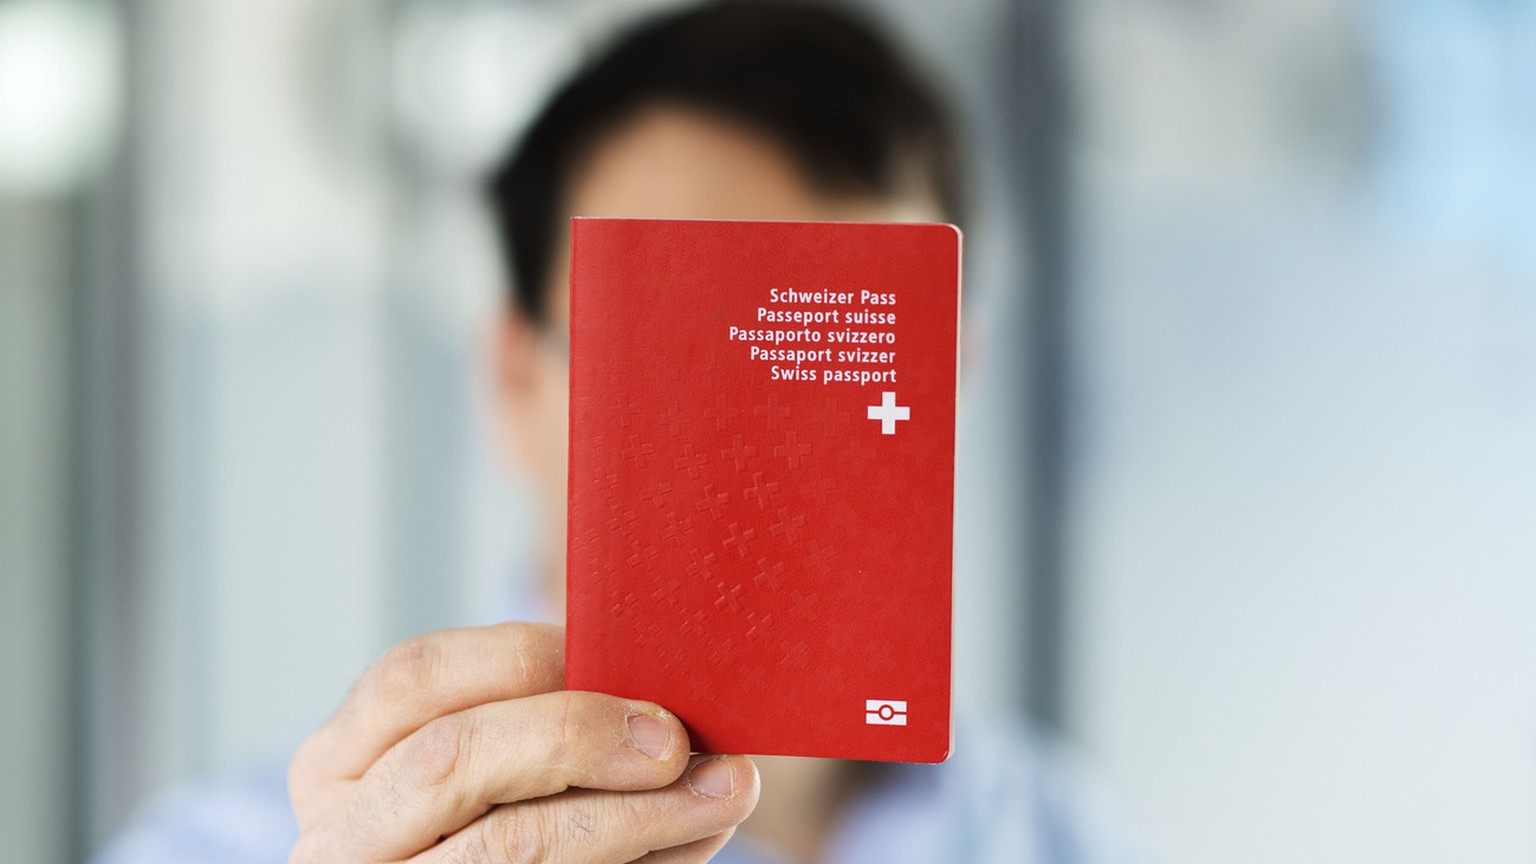 Ein Mann haelt einen biometrischen Schweizer Pass in der Hand, aufgenommen am 10. Februar 2014 in Bern. (KEYSTONE/Christian Beutler)

A man holds a Swiss biometric passport, pictured in Bern, Switzerl ...